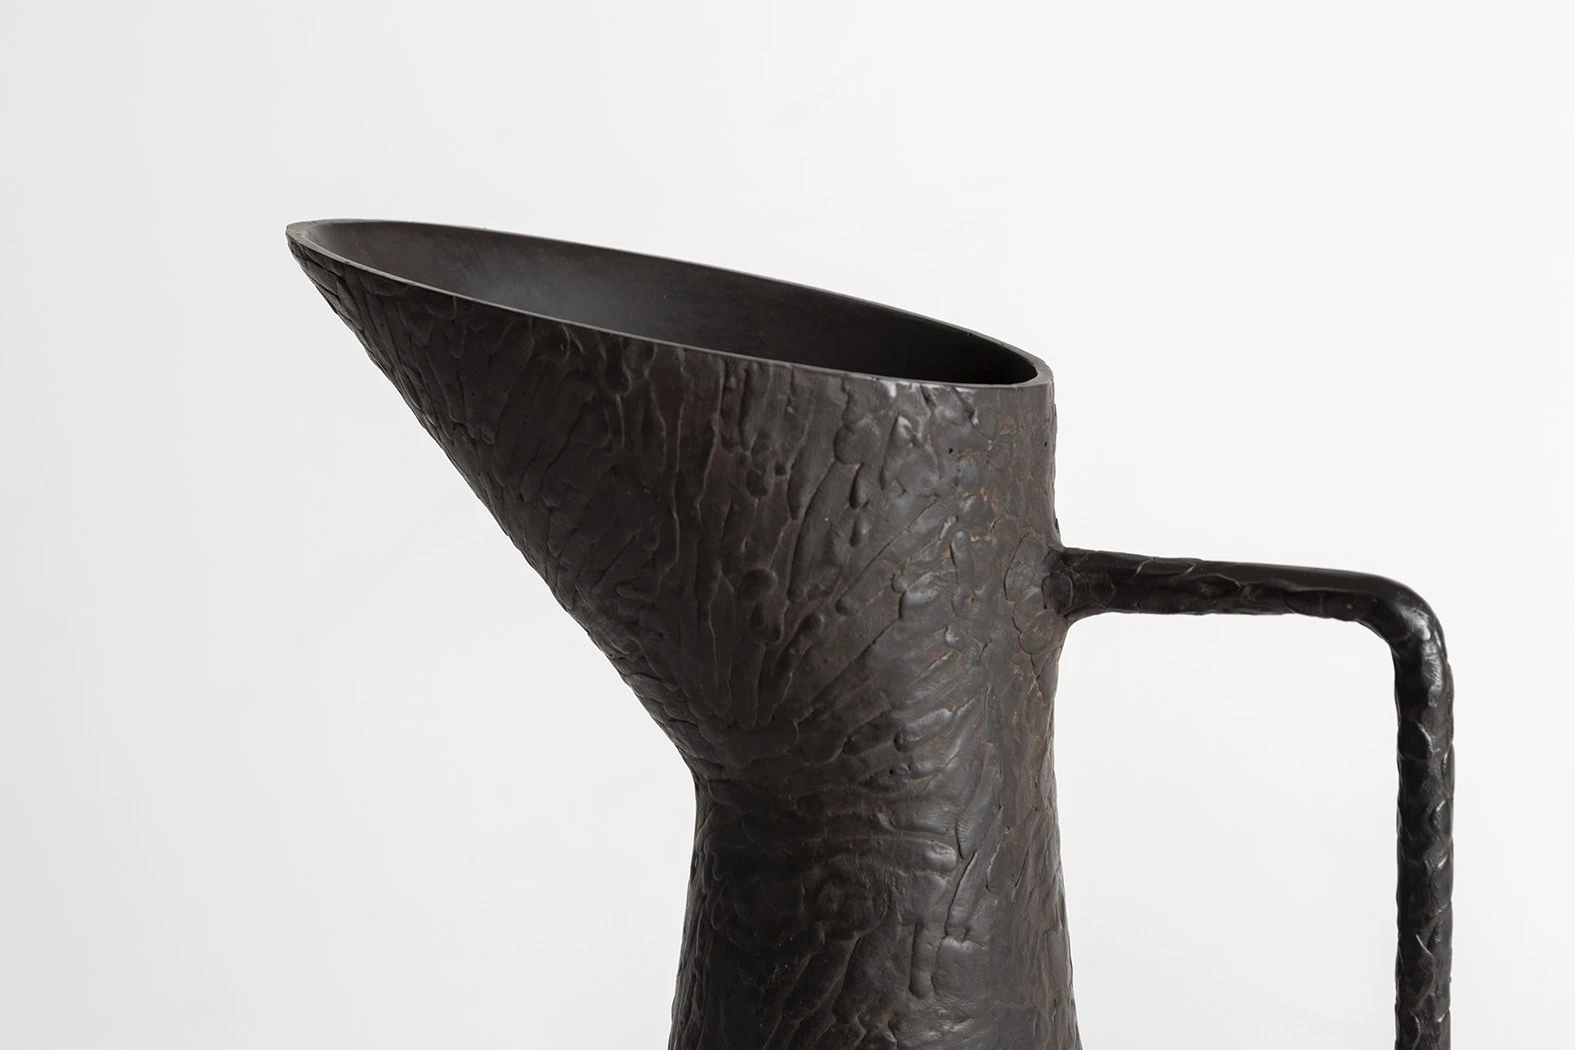 Broc #1 - Guillaume Bardet - Vase - Galerie kreo